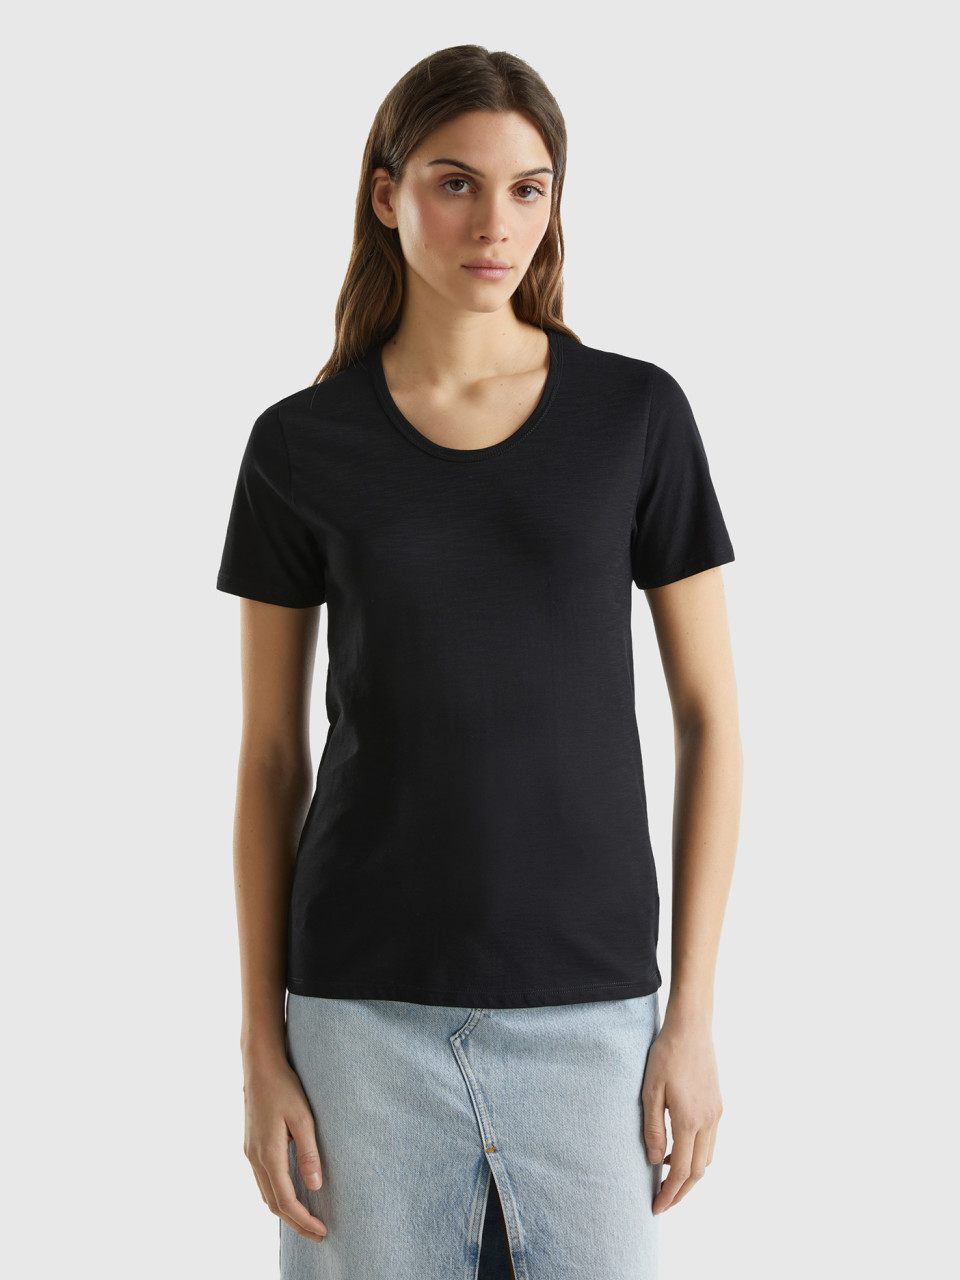 Benetton, Short Sleeve T-shirt Lightweight Cotton, Black, Women